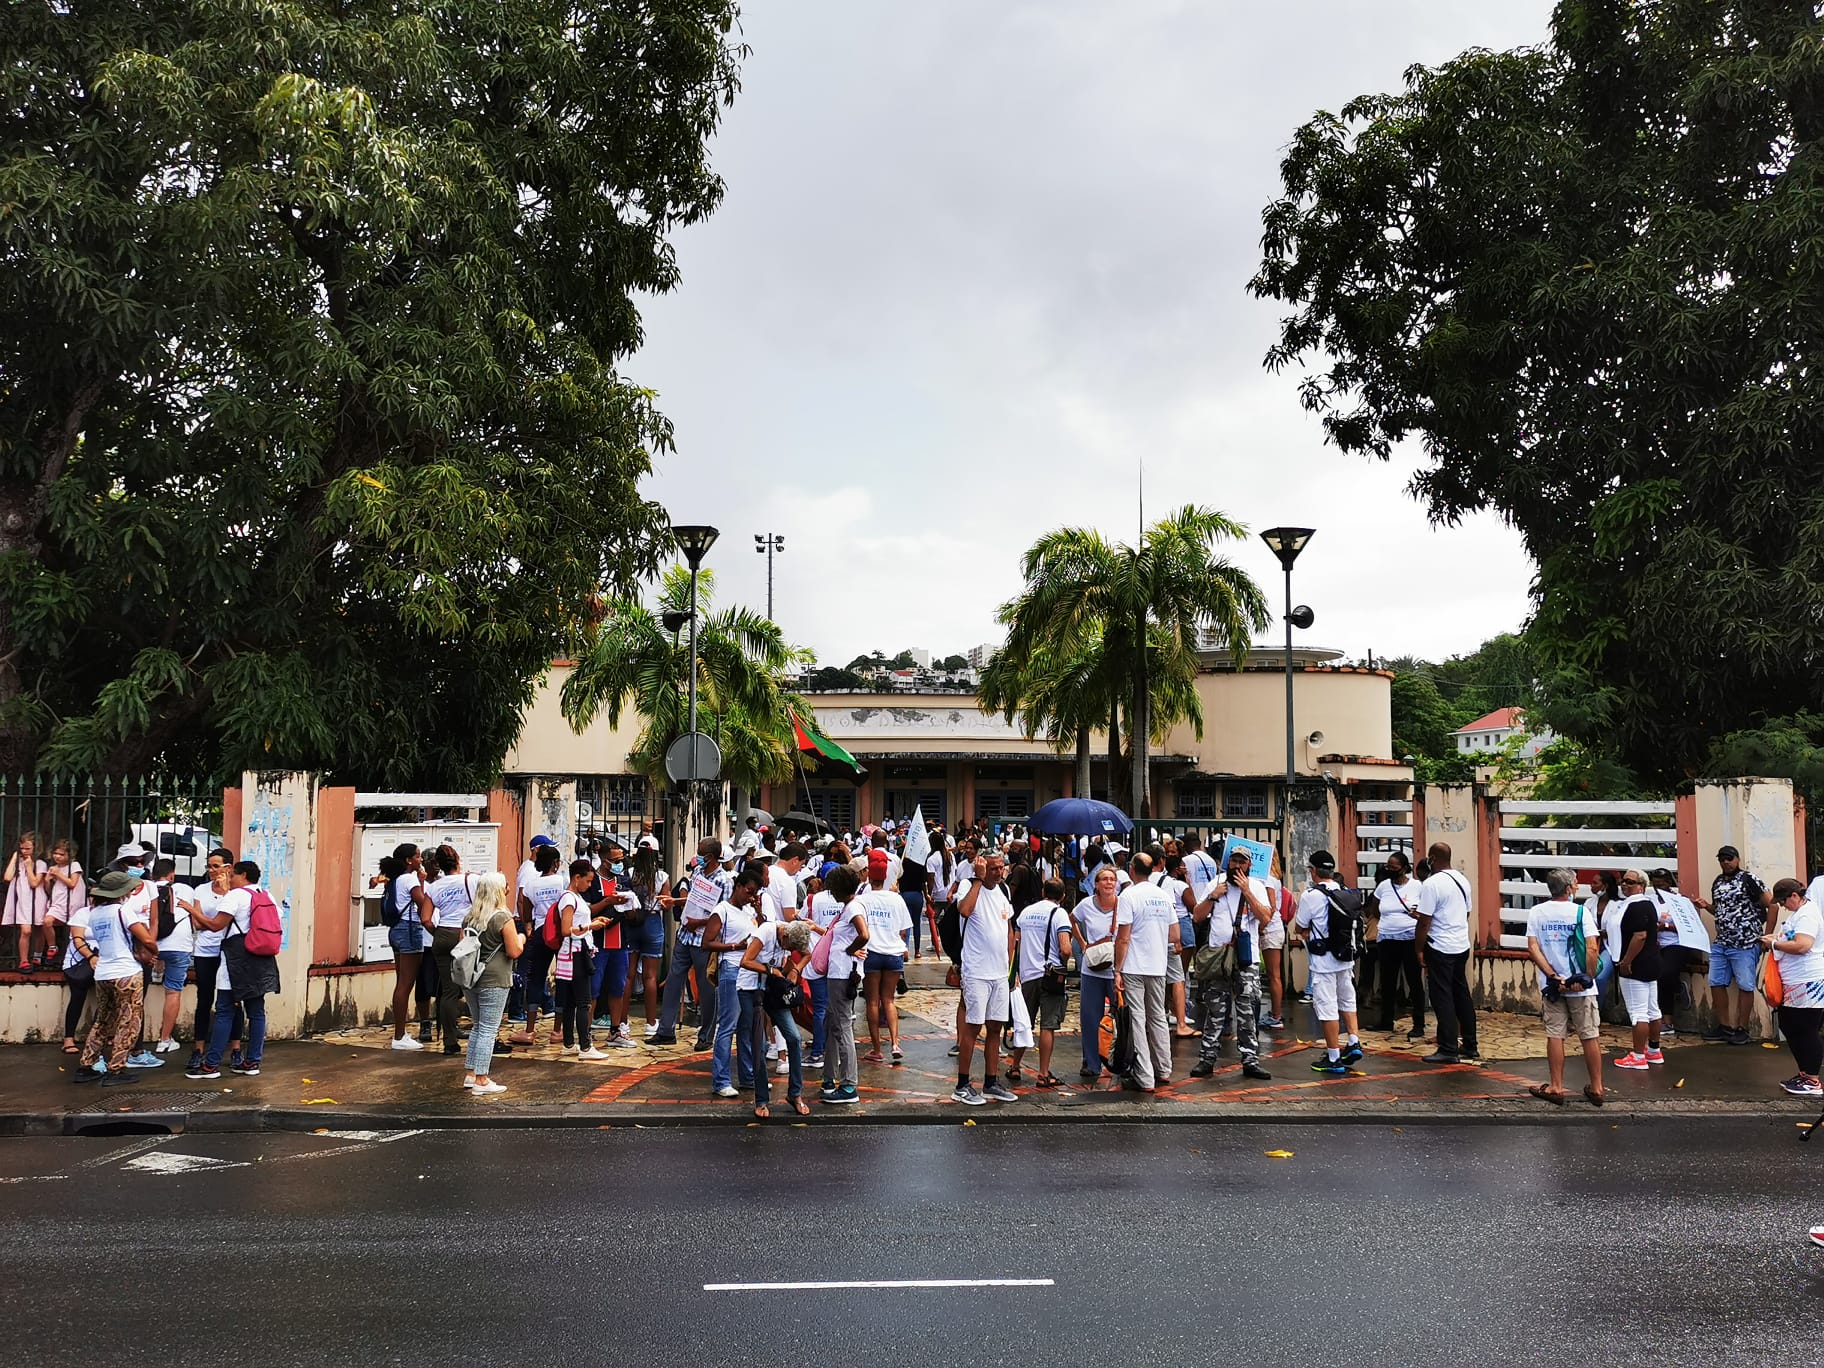     Troisième manifestation contre le passe sanitaire et l'obligation vaccinale en Martinique

